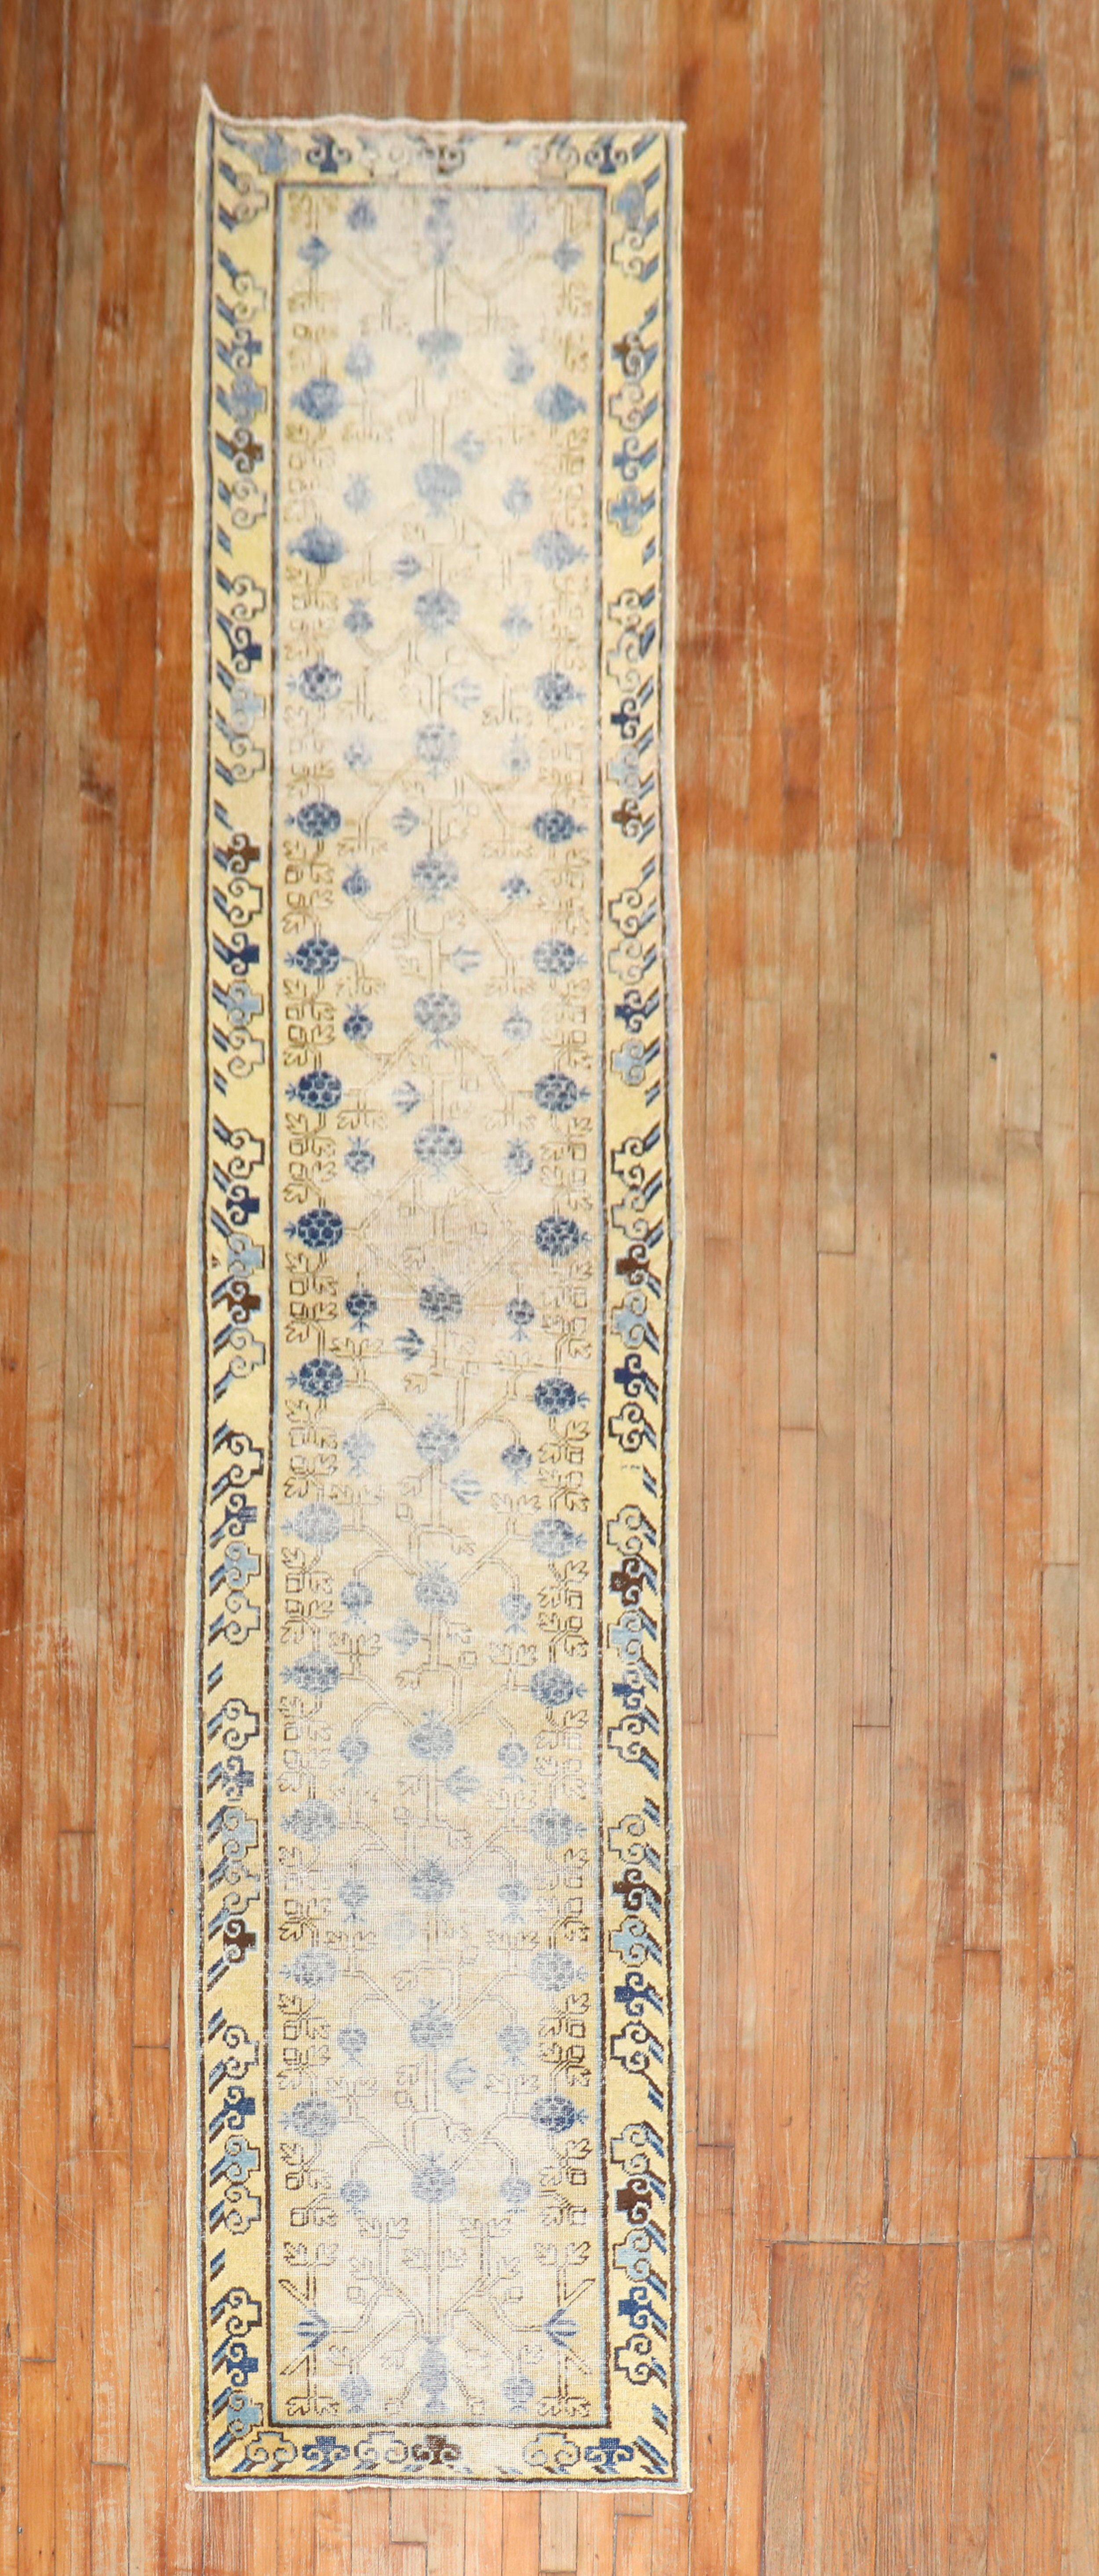 Abgenutzter Khotan-Läufer aus Ostturkestan aus dem späten 19. Jahrhundert mit einem Granatapfelmuster in Grau, Senf, Beige und Denim-Blau

Maße: 2'6'' x 14'.